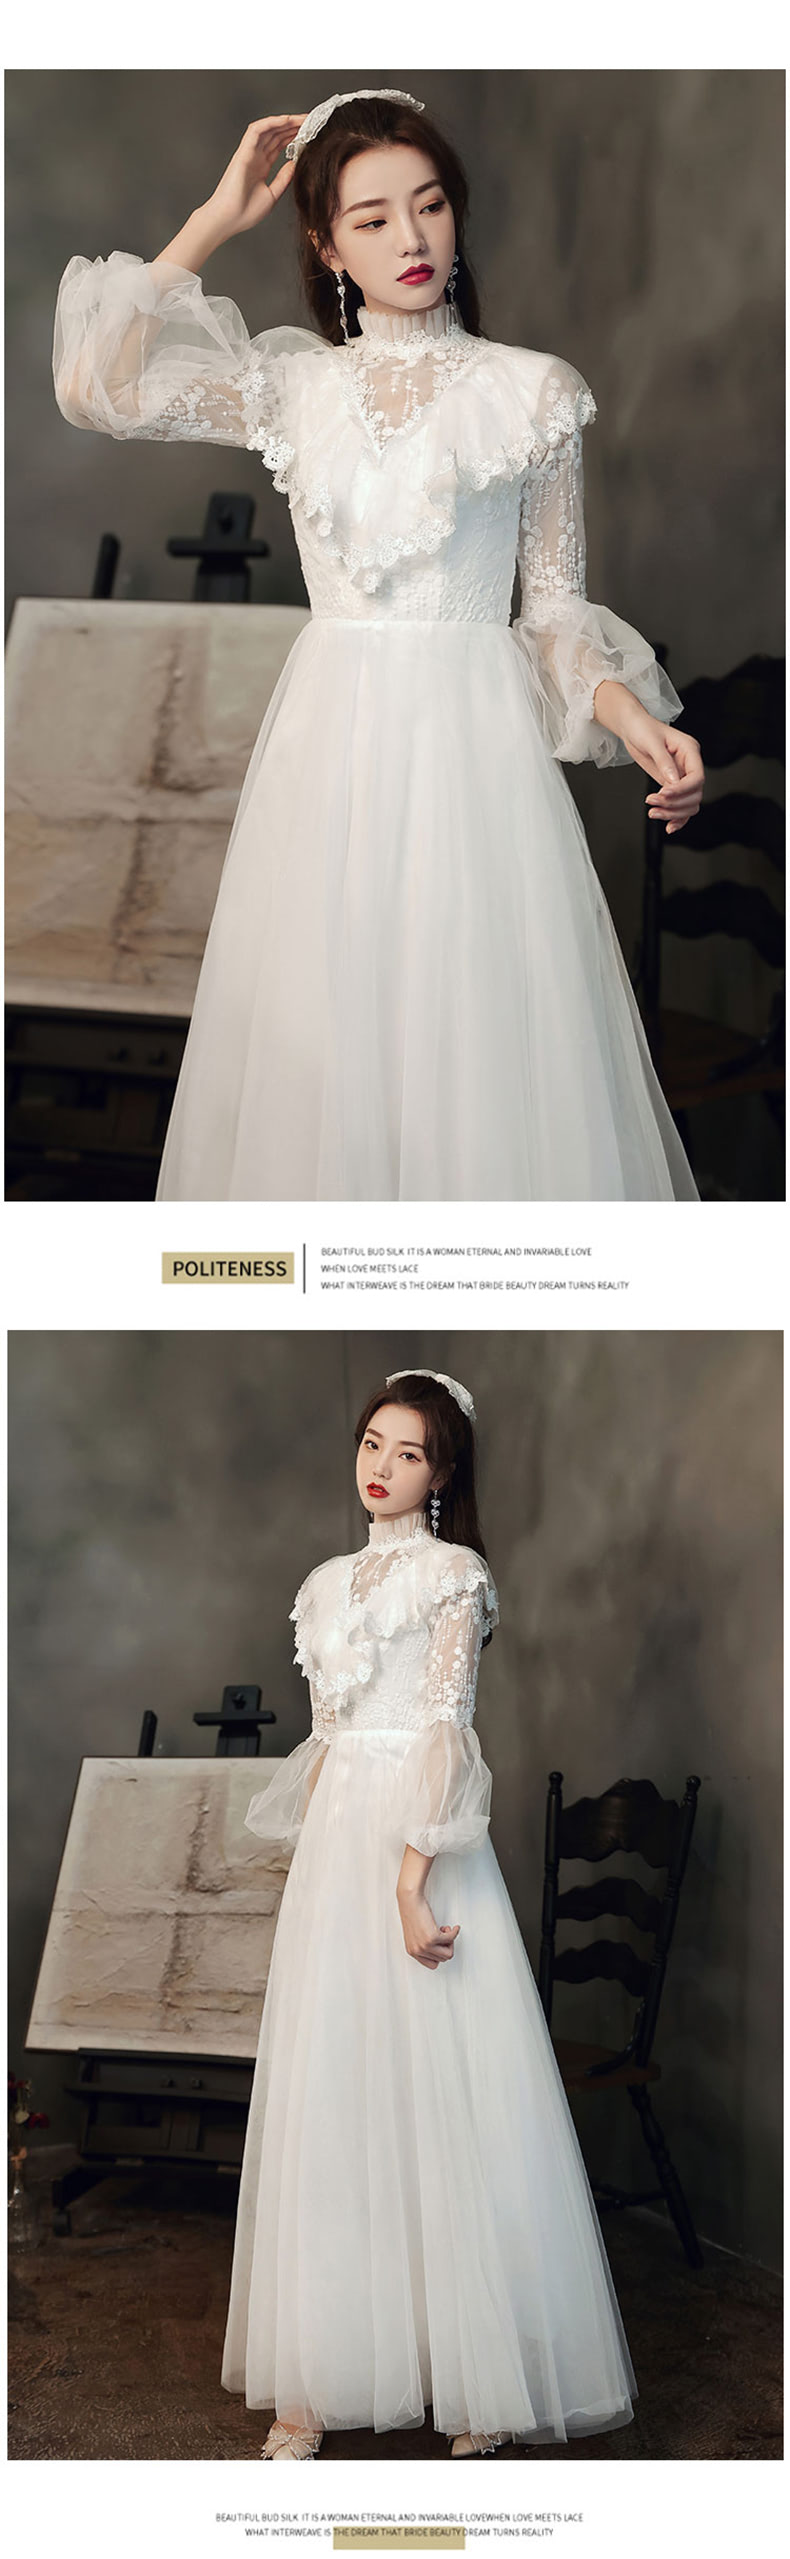 Elegant-Long-Sleeve-White-Maxi-Dress-Prom-Dance-Ball-Gown12.jpg